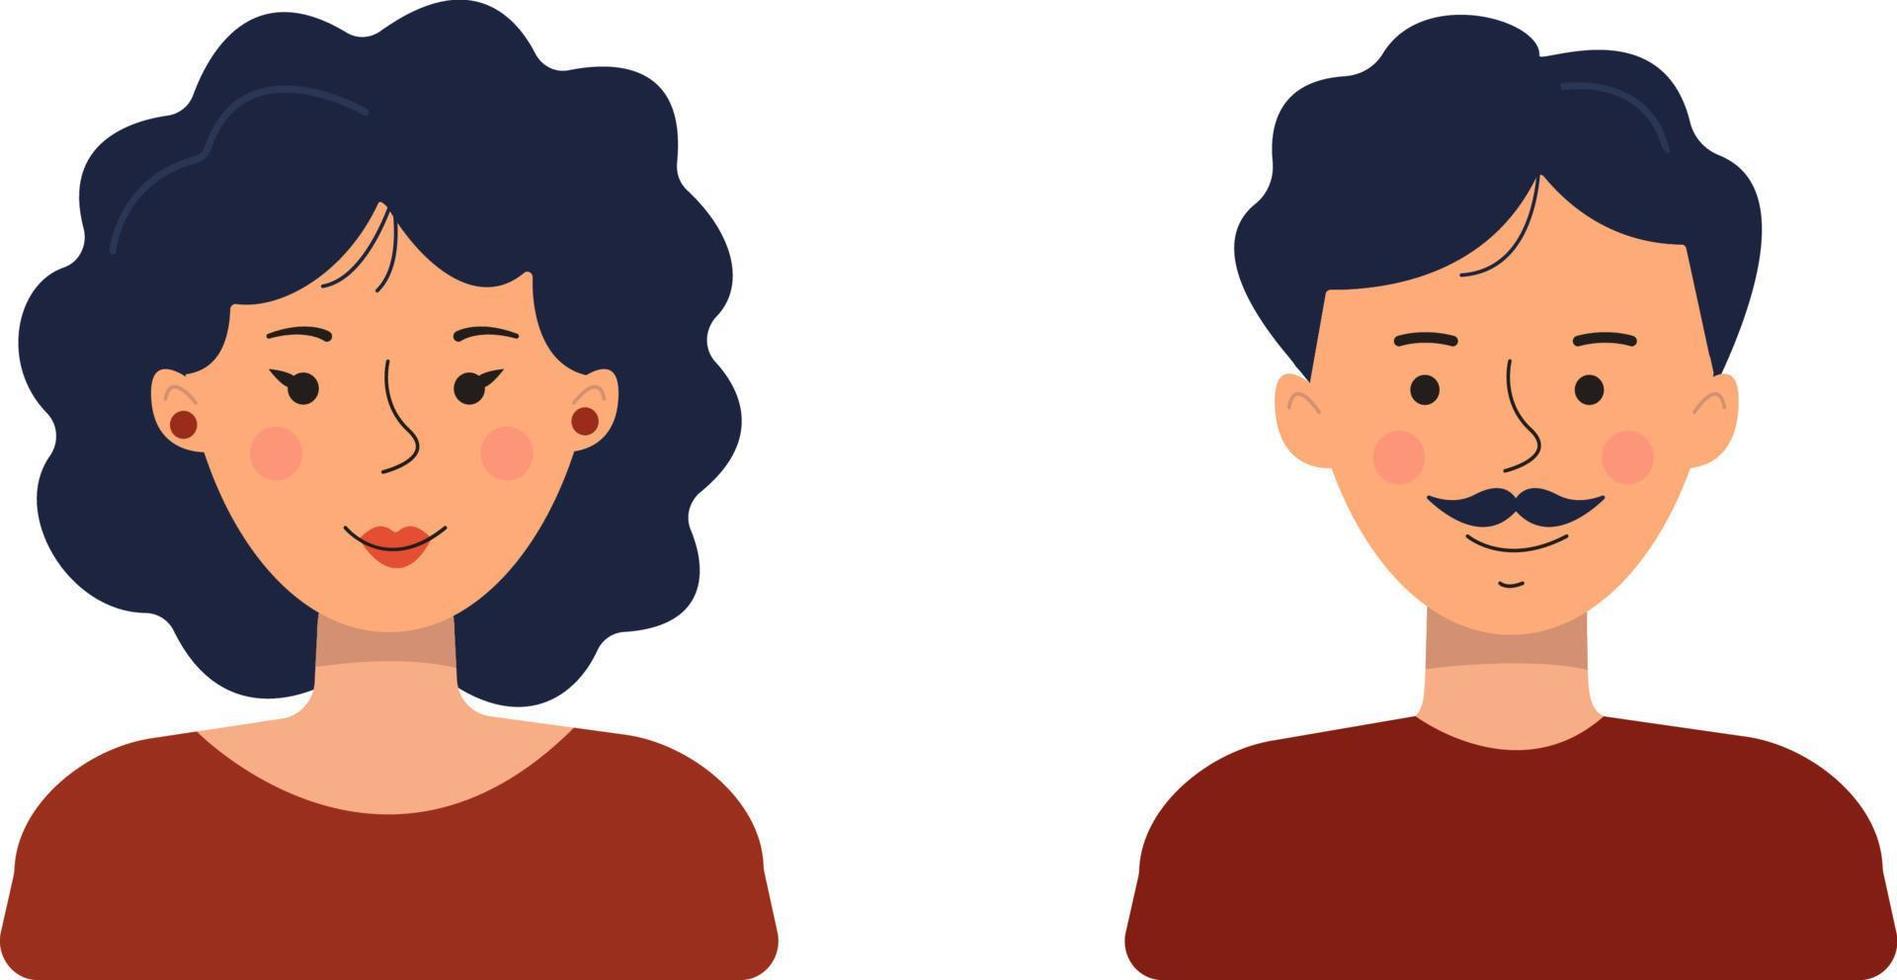 avatares de pessoas em um estilo simples. ilustração em vetor de um homem e uma mulher isolados em um fundo branco.